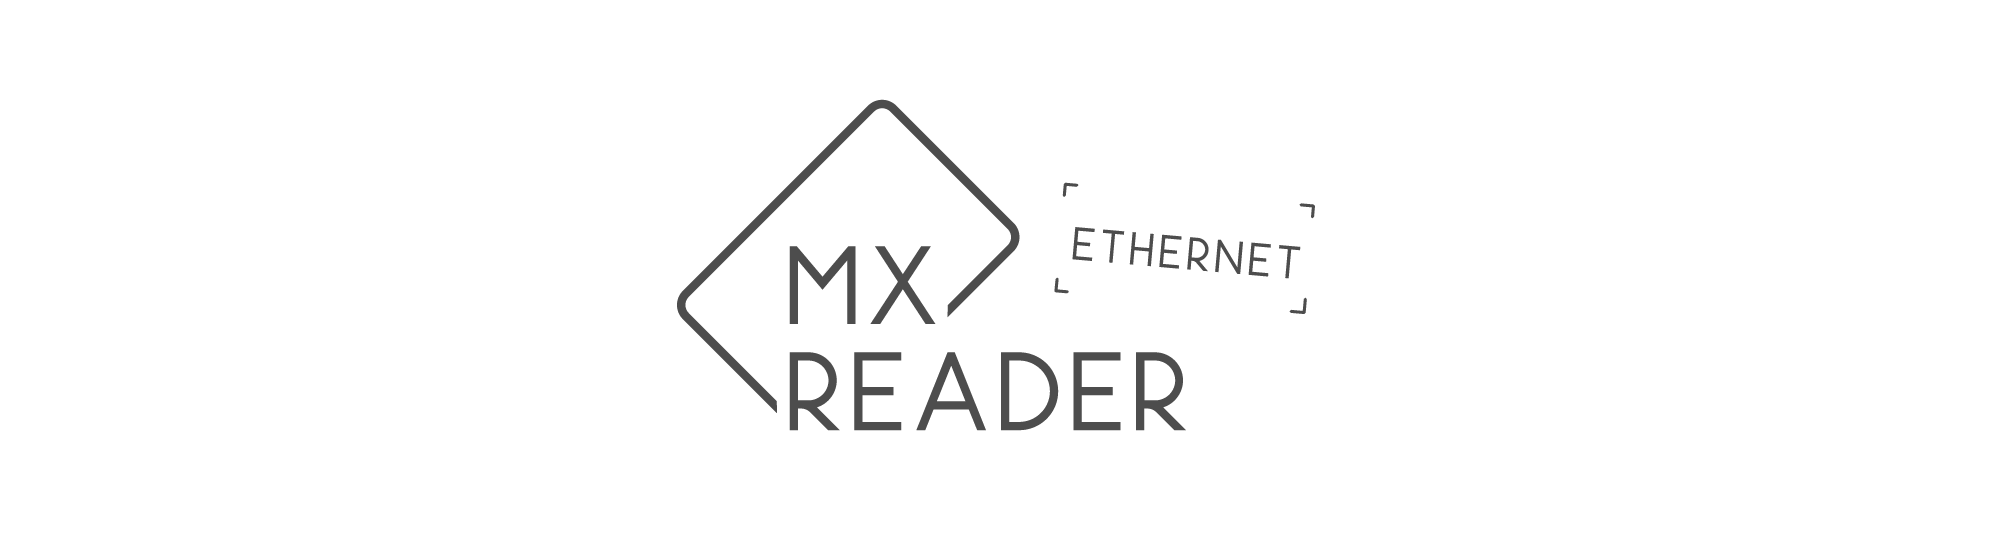 MXreader ethernet